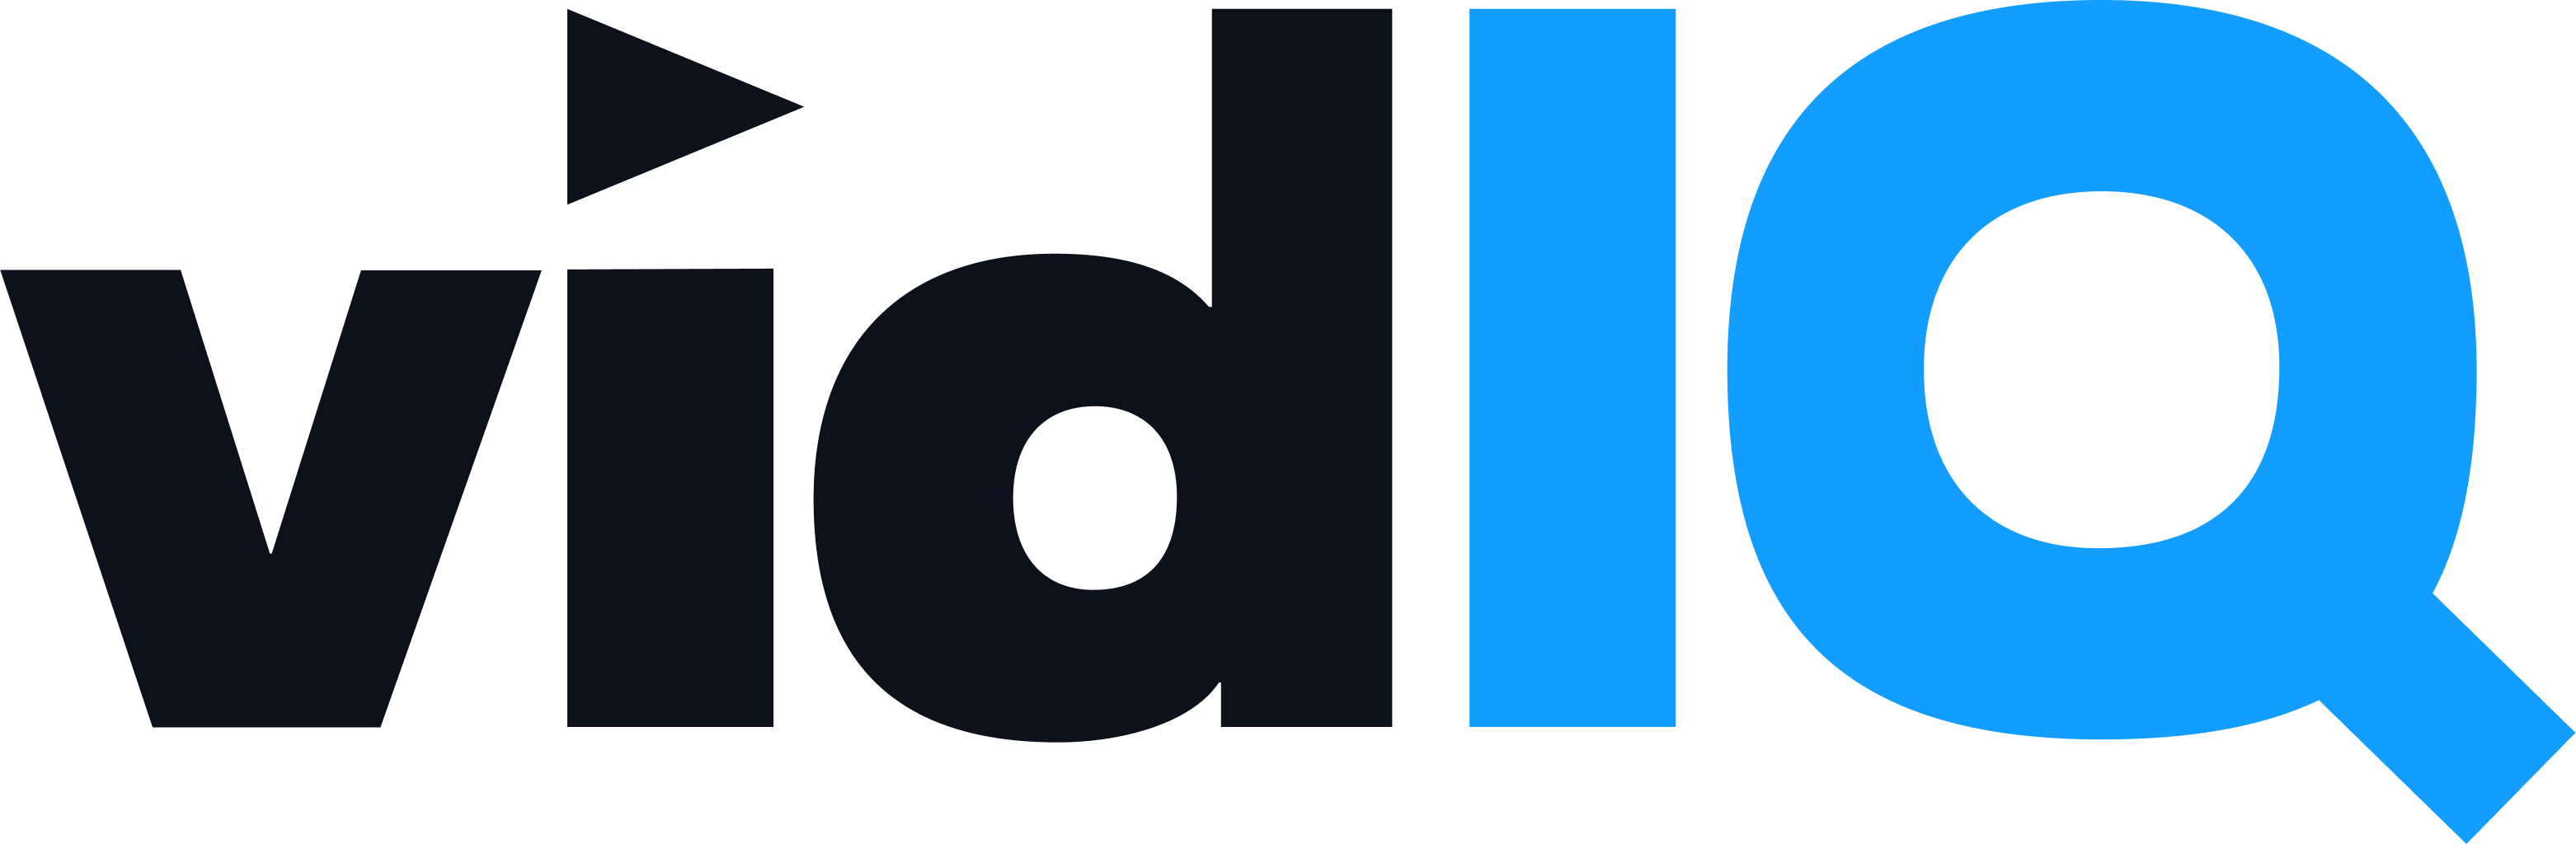 vidIQ Logo Inverted Color